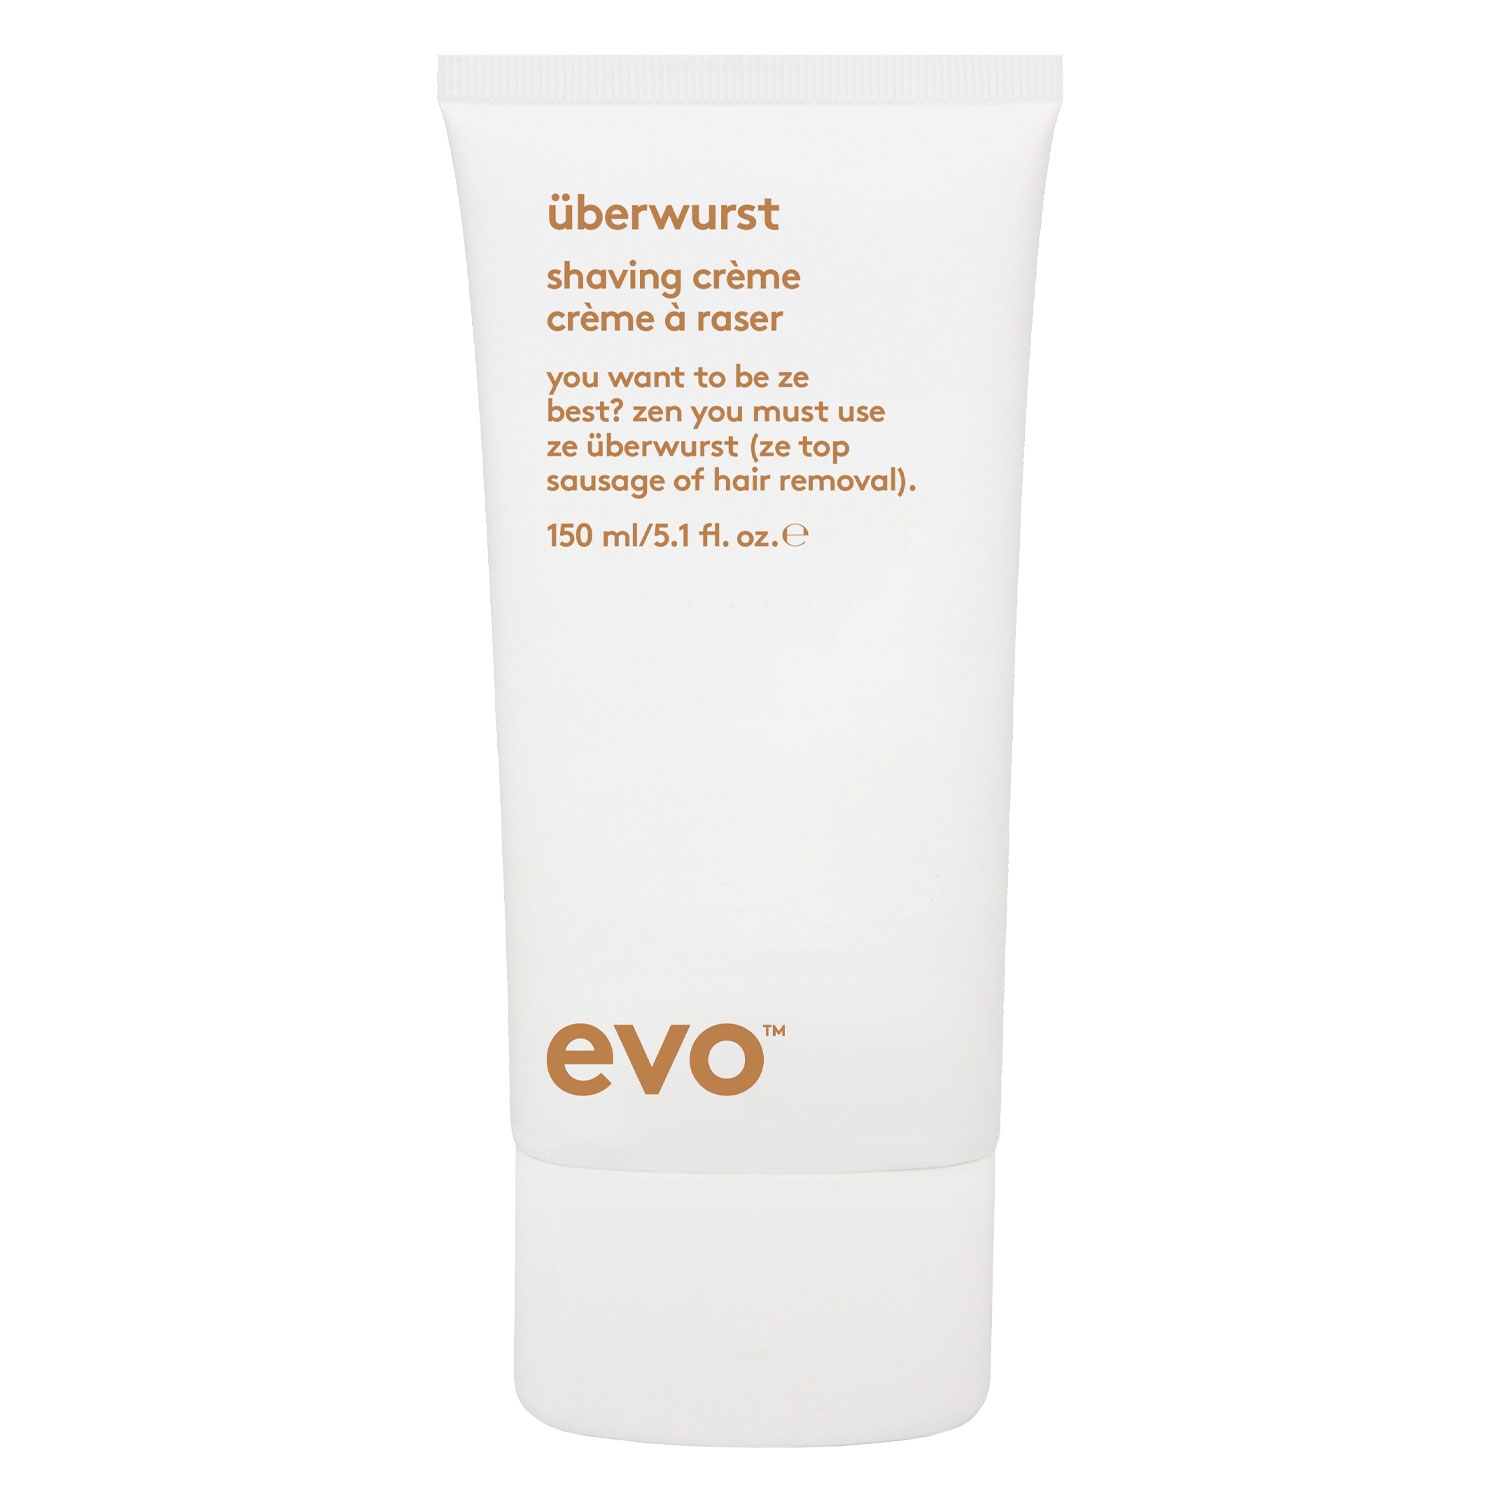 Produktbild von evo face - überwurst shaving crème